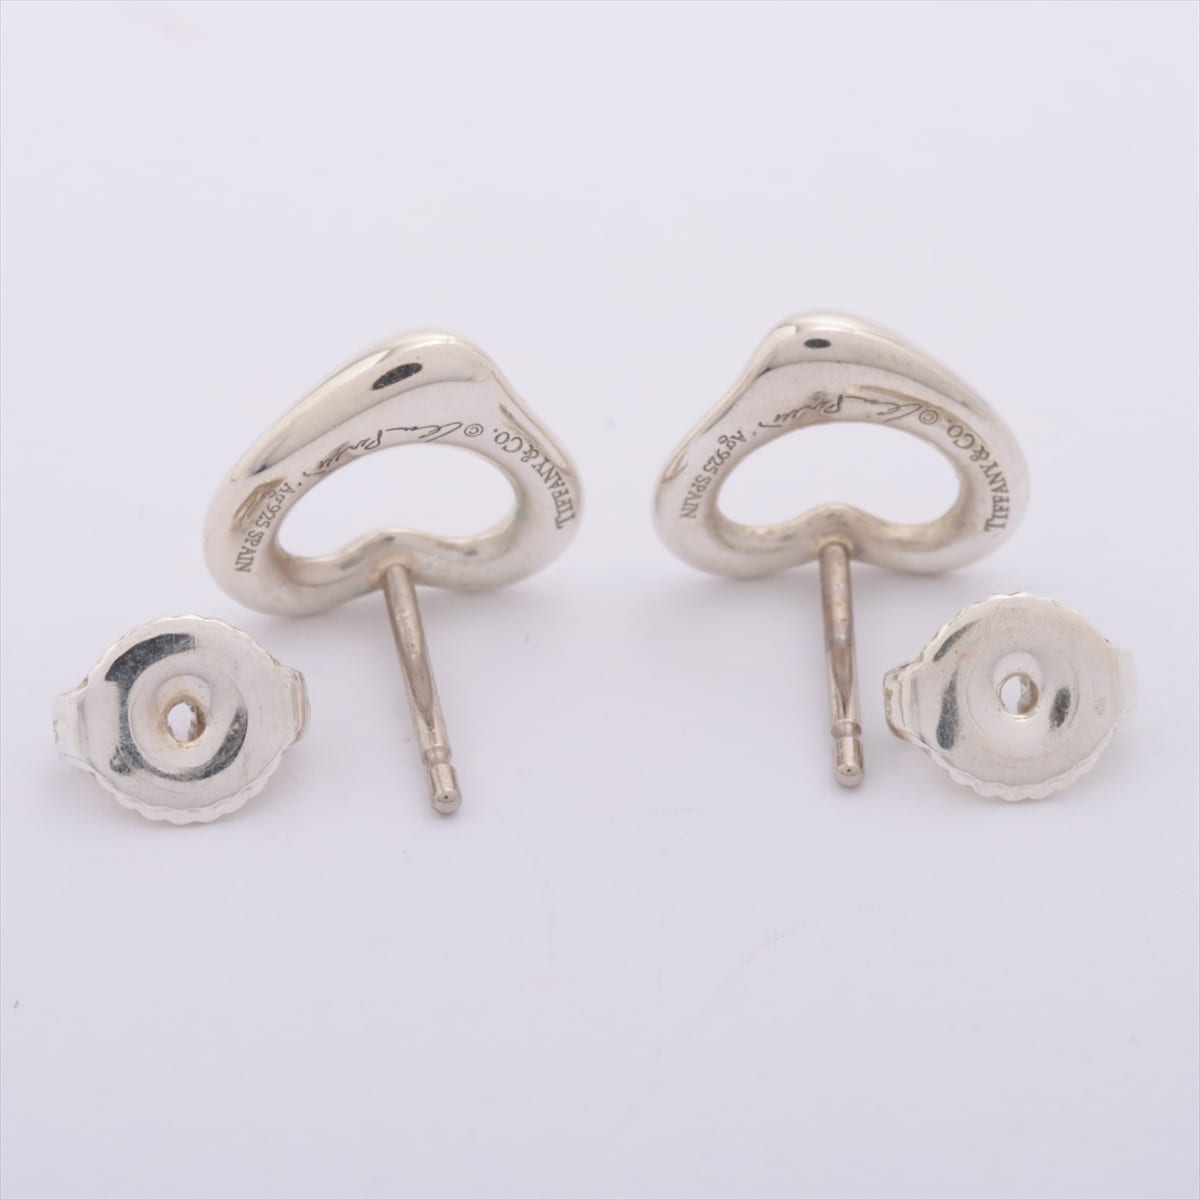 Tiffany Open Heart Piercing jewelry (for both ears) 925 2.2g Silver